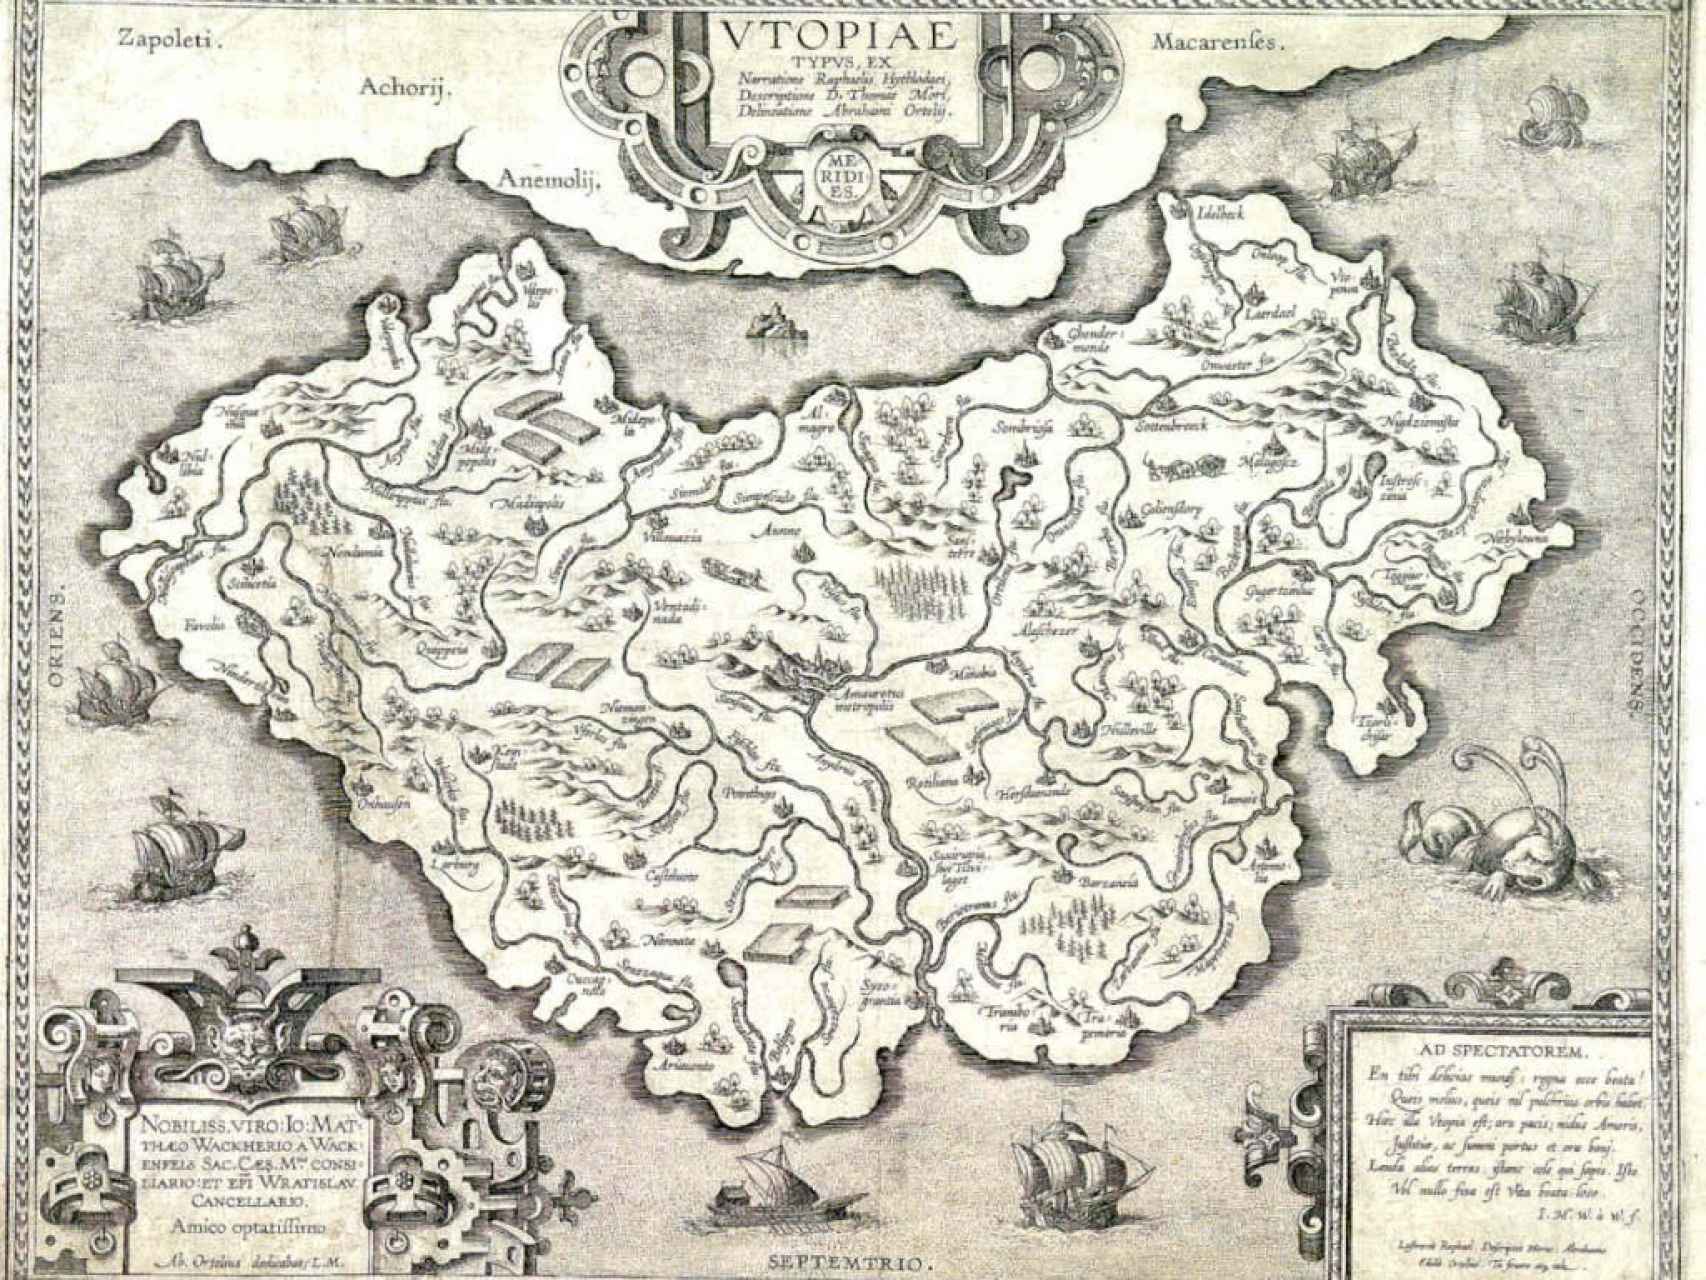 Mapa de la Utopía de Tomás Moro.